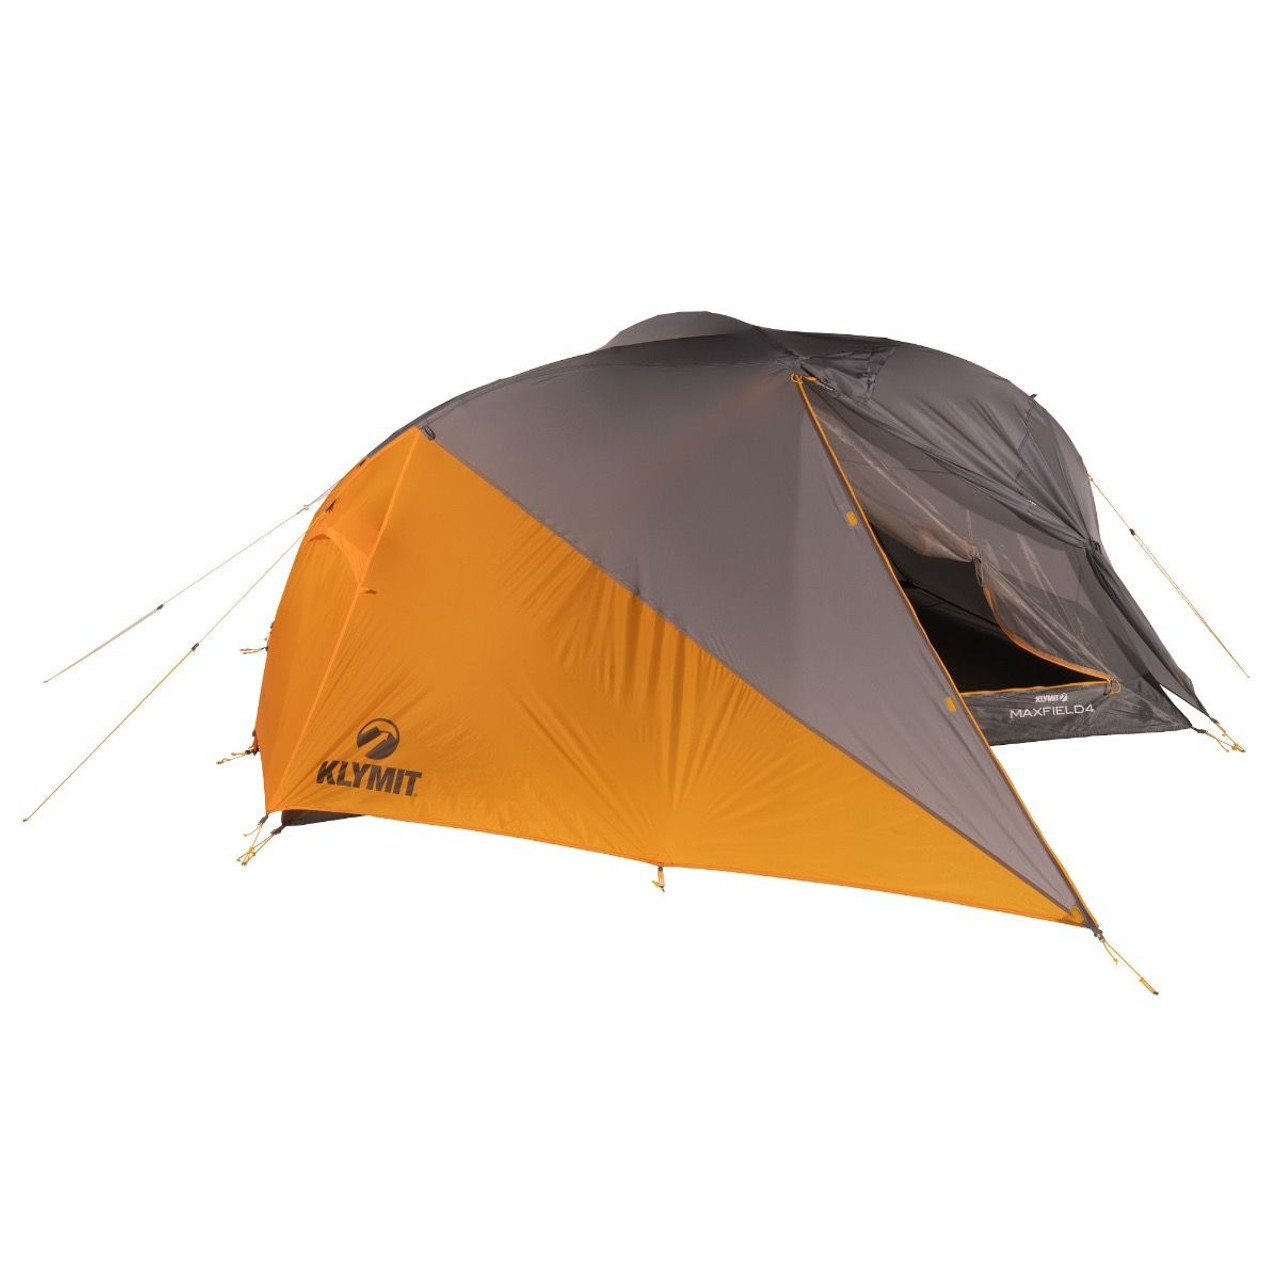 Mountain Warehouse Backpacker Lightweight 2 Man Tent review, tent ...